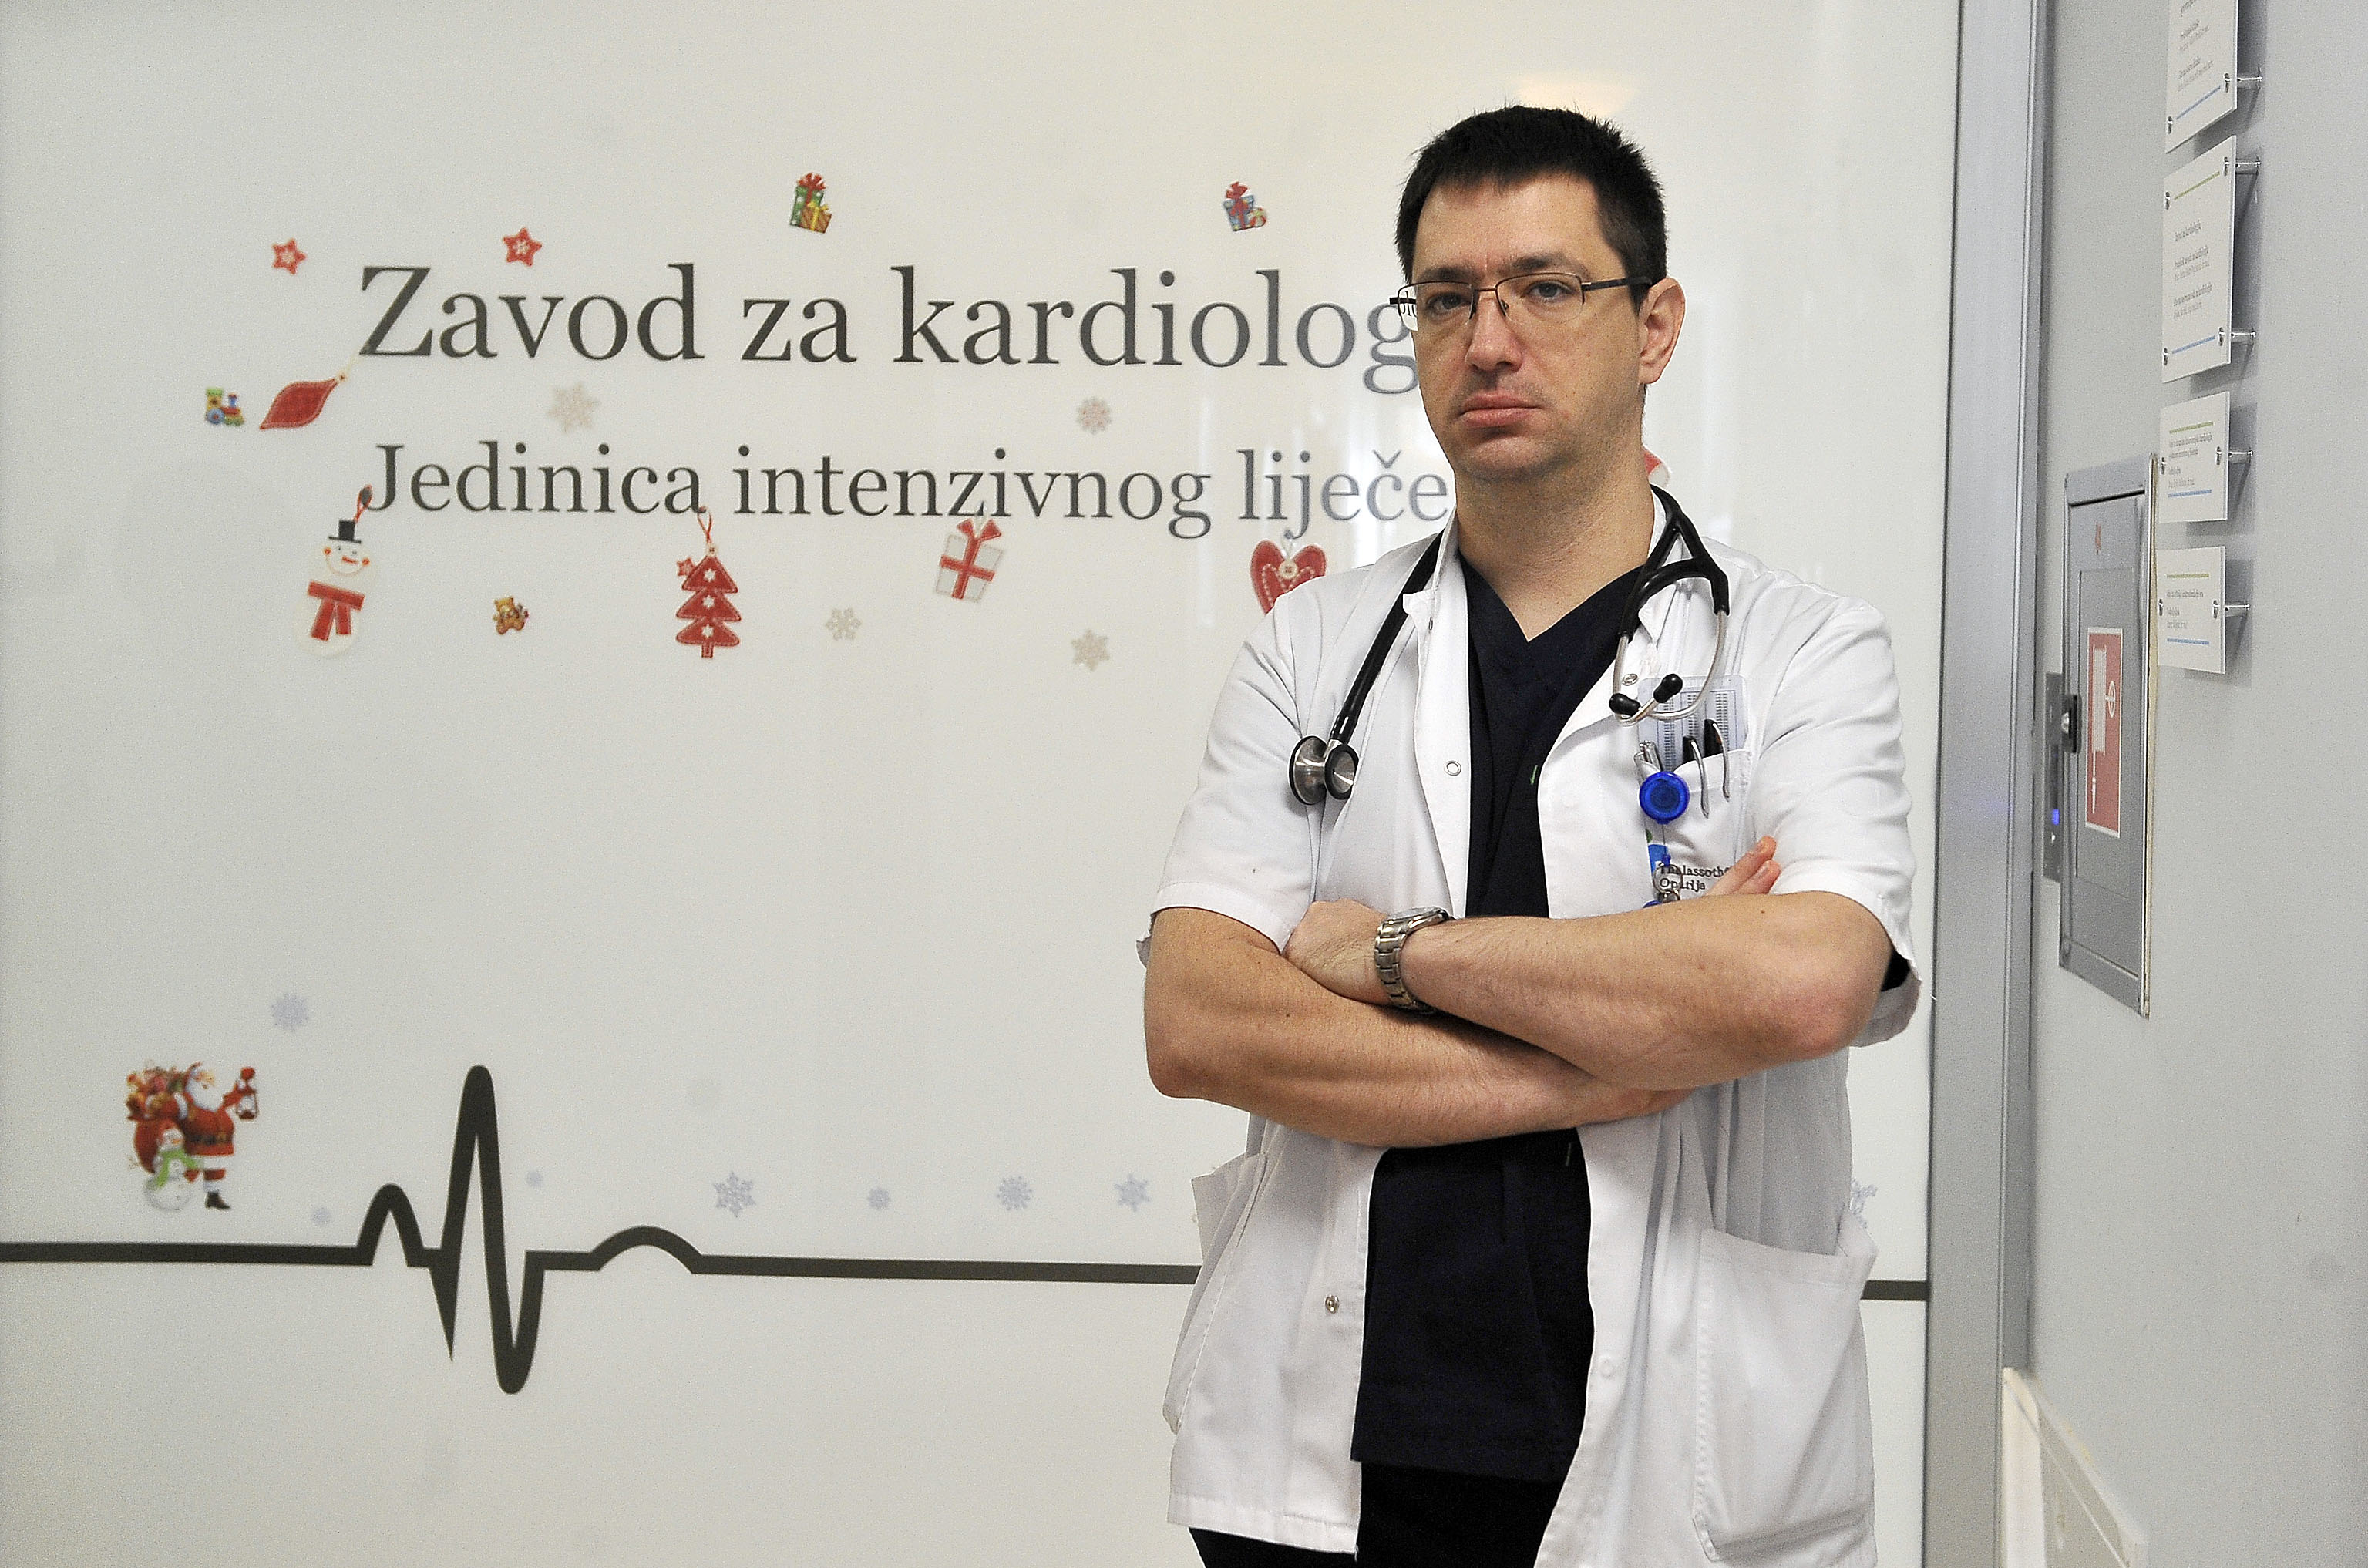 Postali smo prepoznatljivi u Hrvatskoj – dr. Damir Raljević / Snimila Aleksandra KUĆEL-ILIĆ